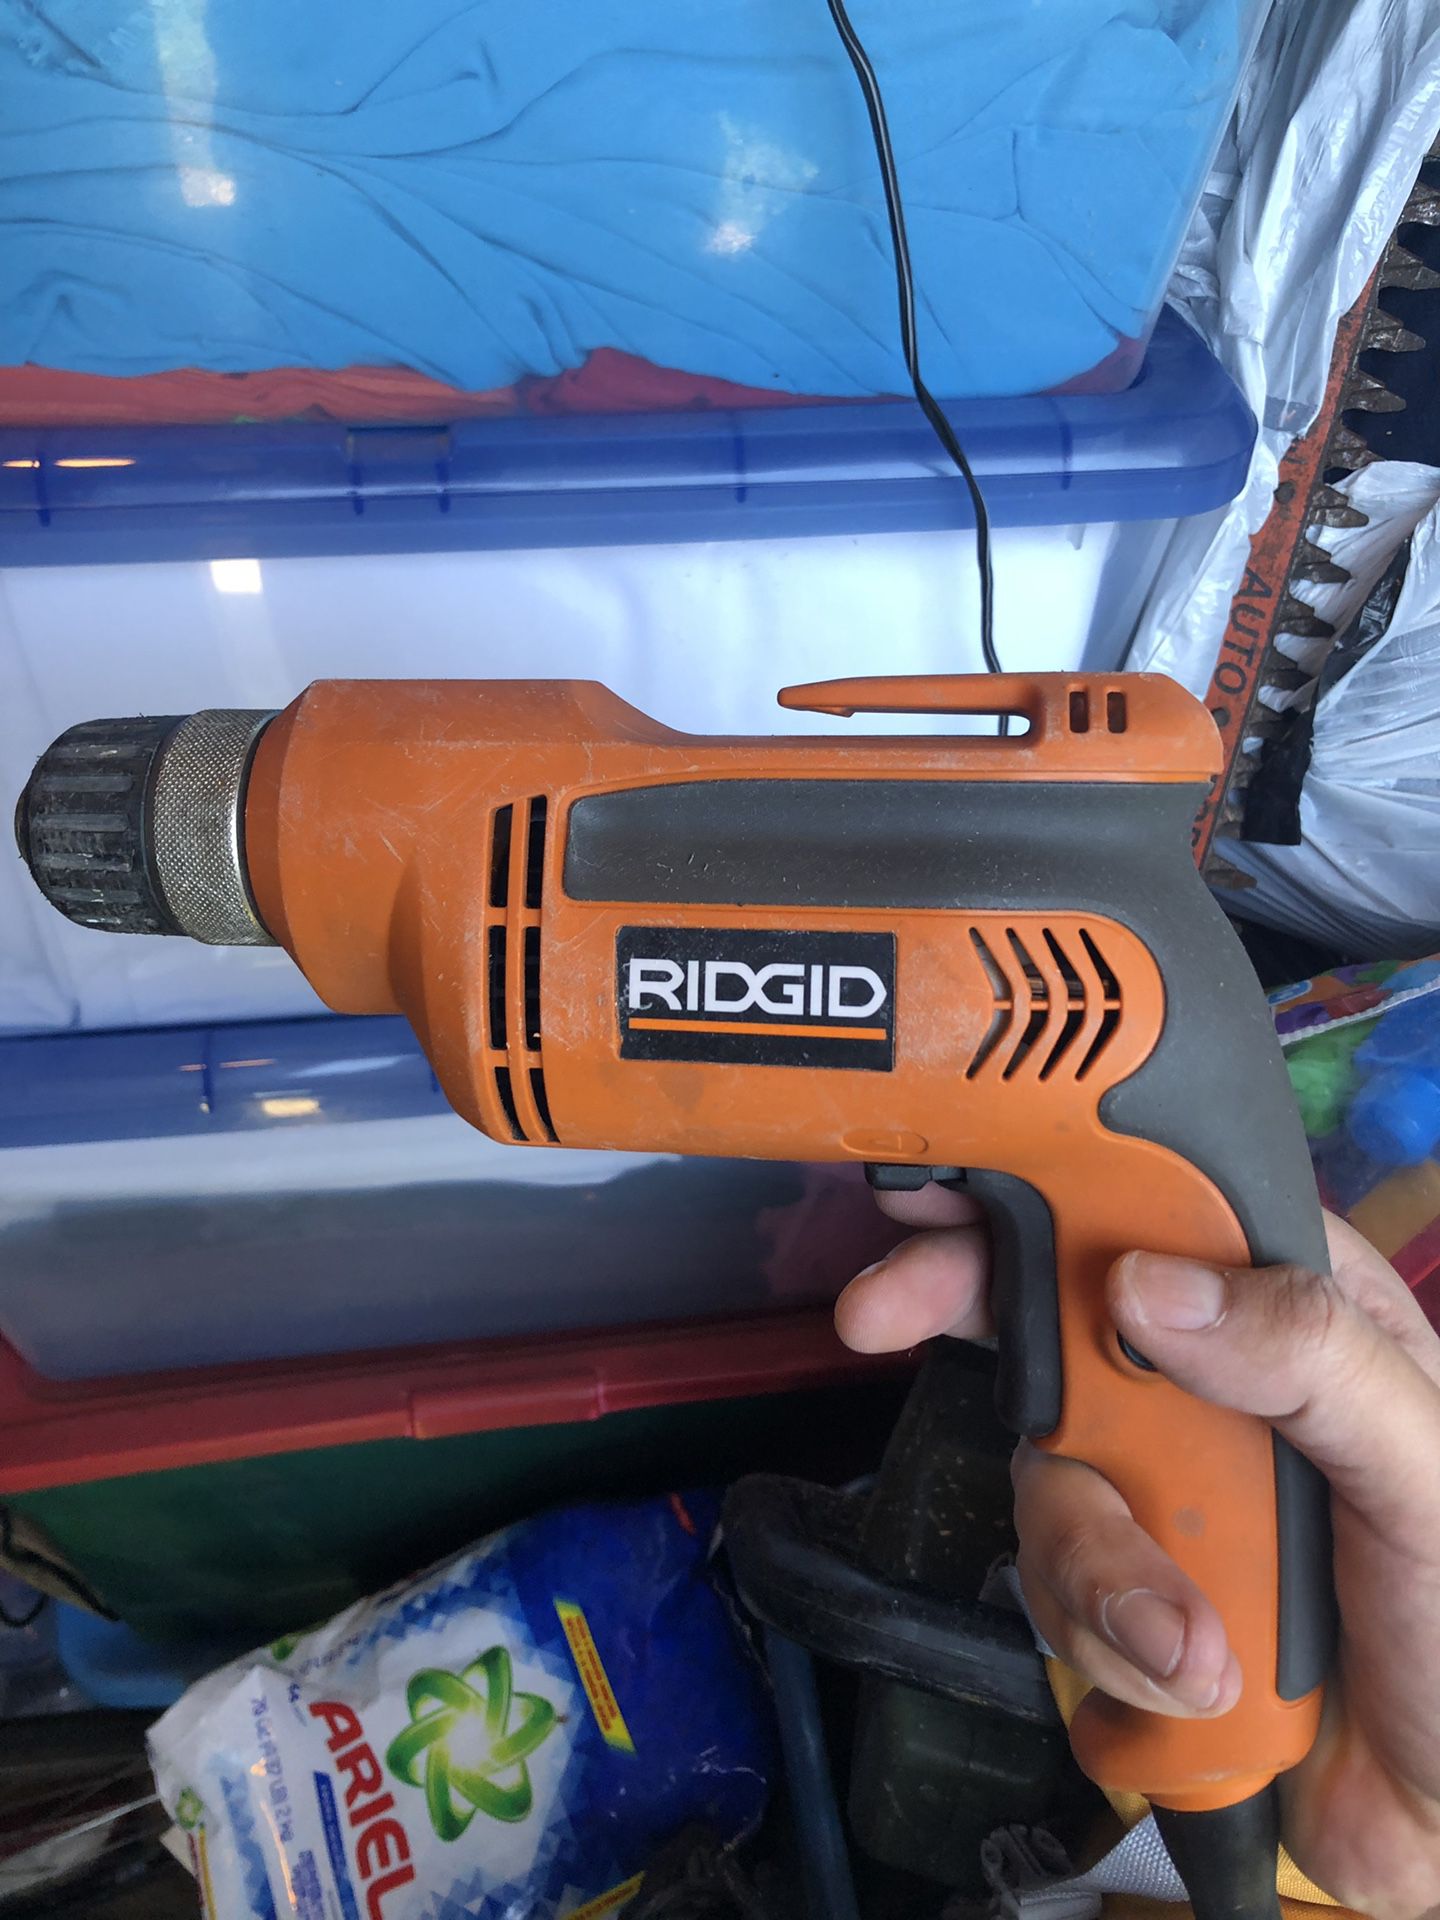 Rigid R7000 corded drill